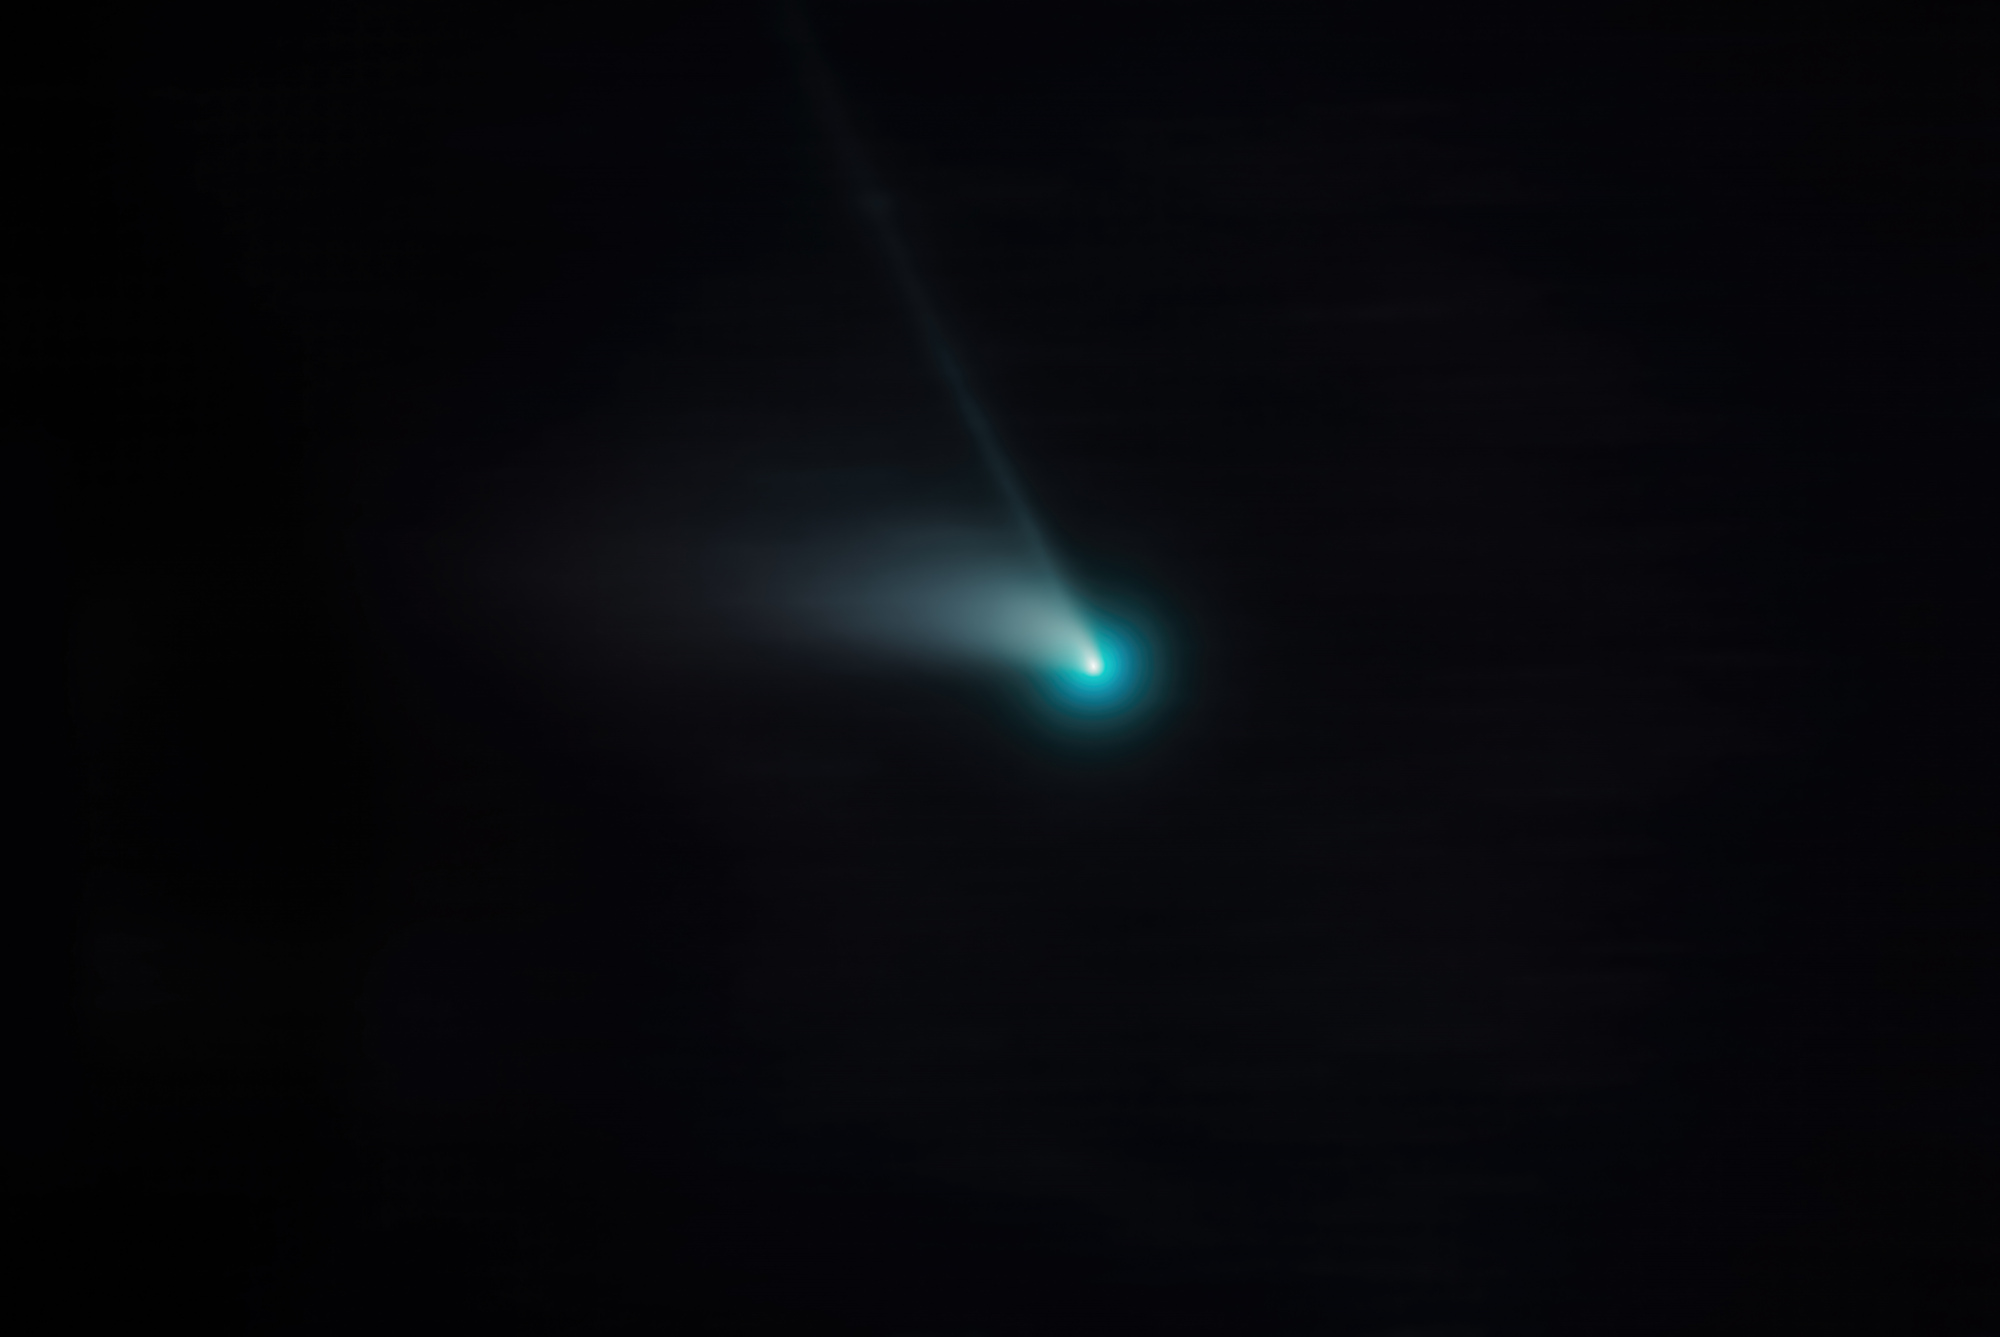 comete_seul_PS_Final.thumb.jpg.8c099f5230681f4cce2cbd7800f7c9ec.jpg